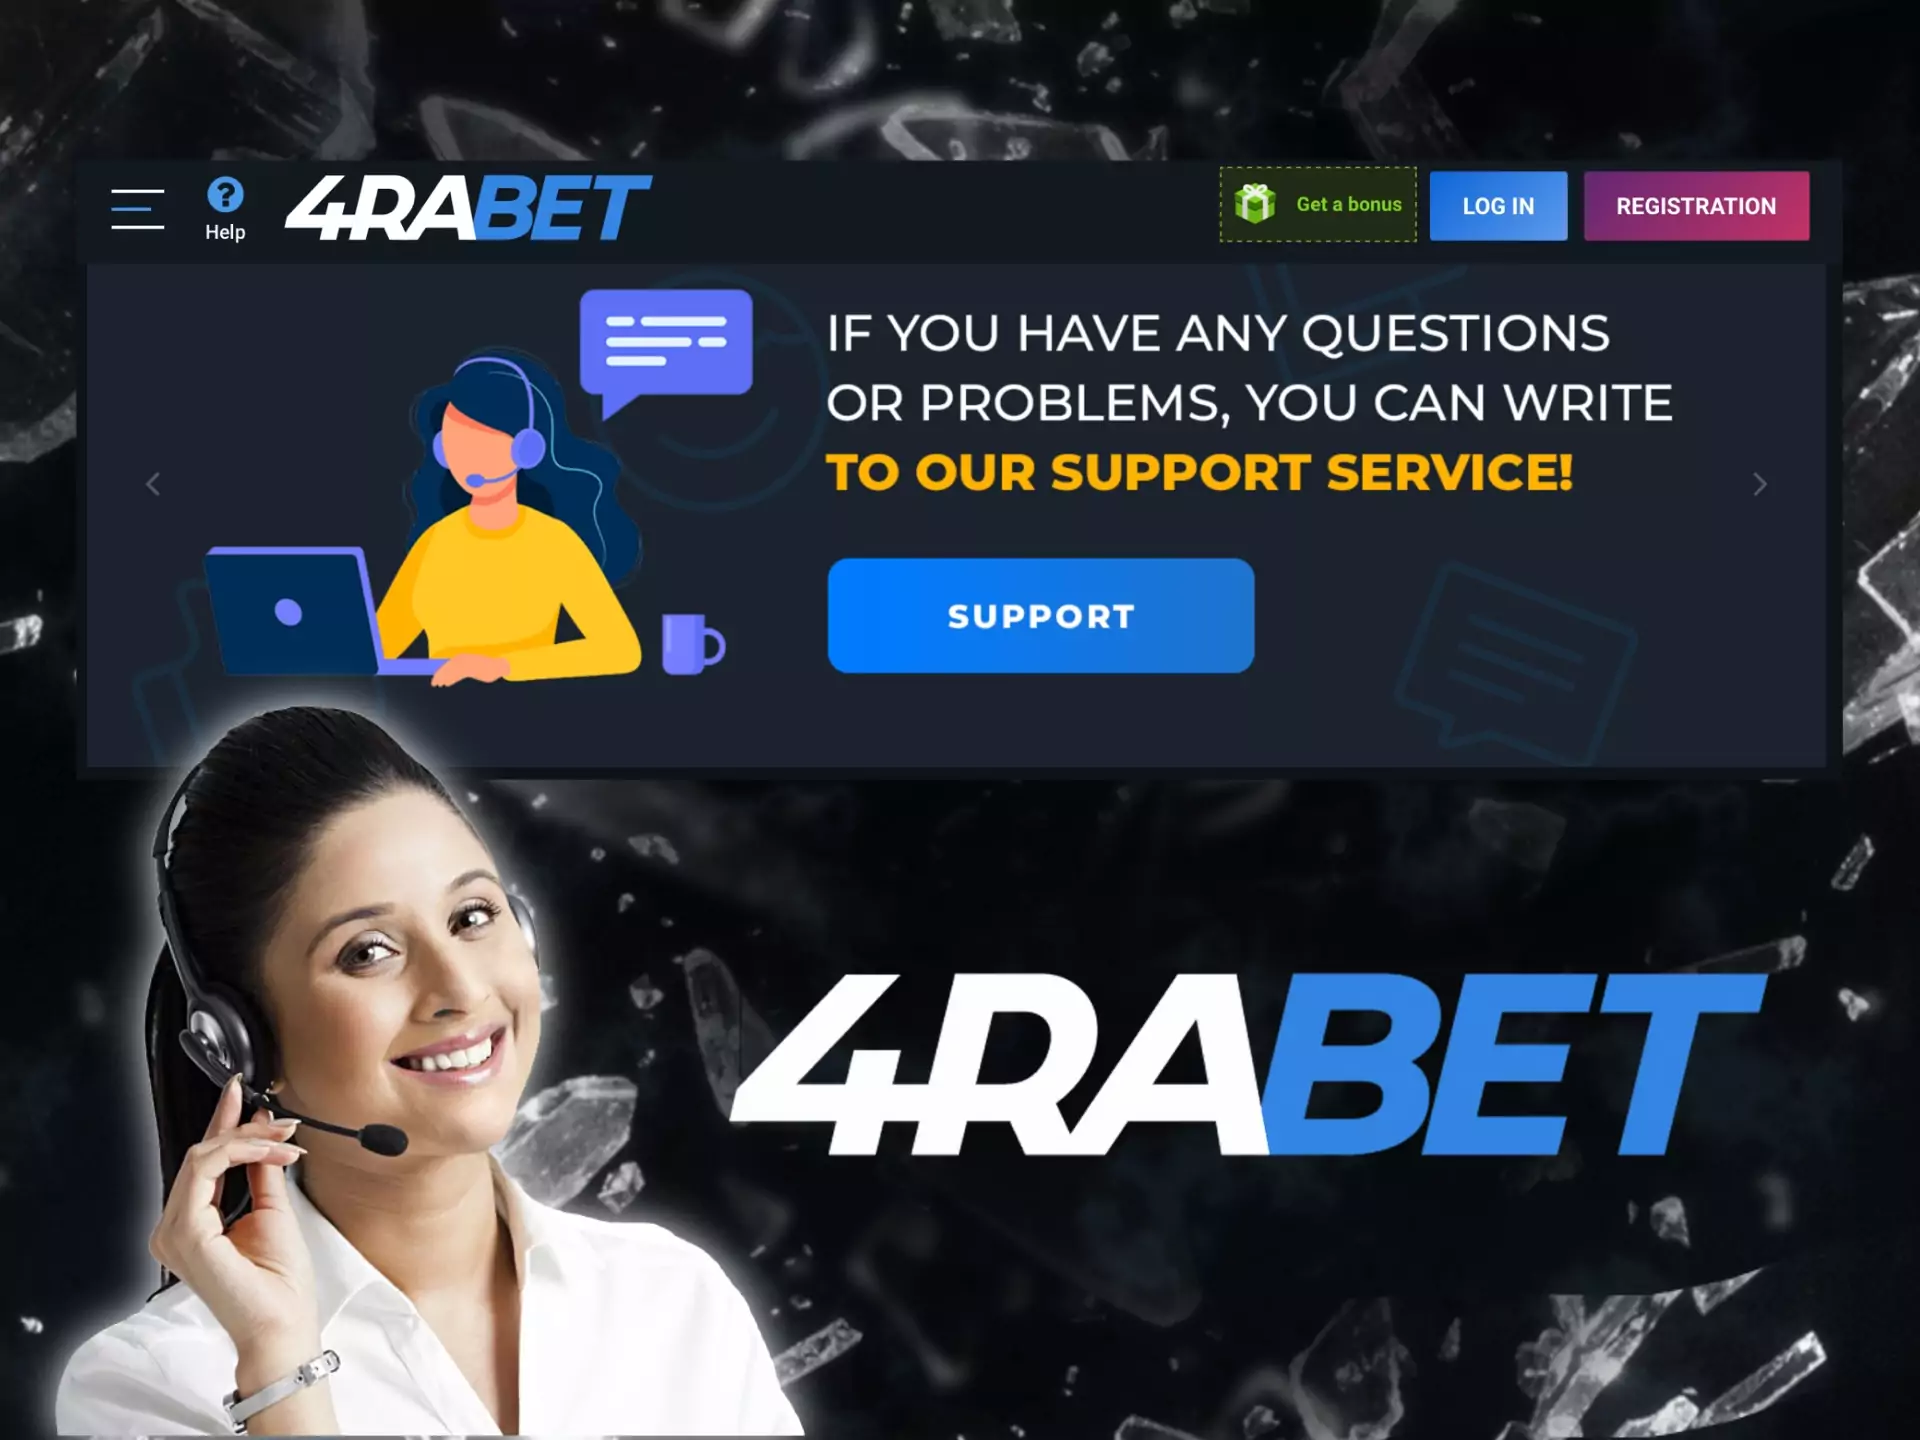 जब भी आपका कोई प्रश्न हो, आप 4rabet की सहायता टीम से संपर्क कर सकते हैं।